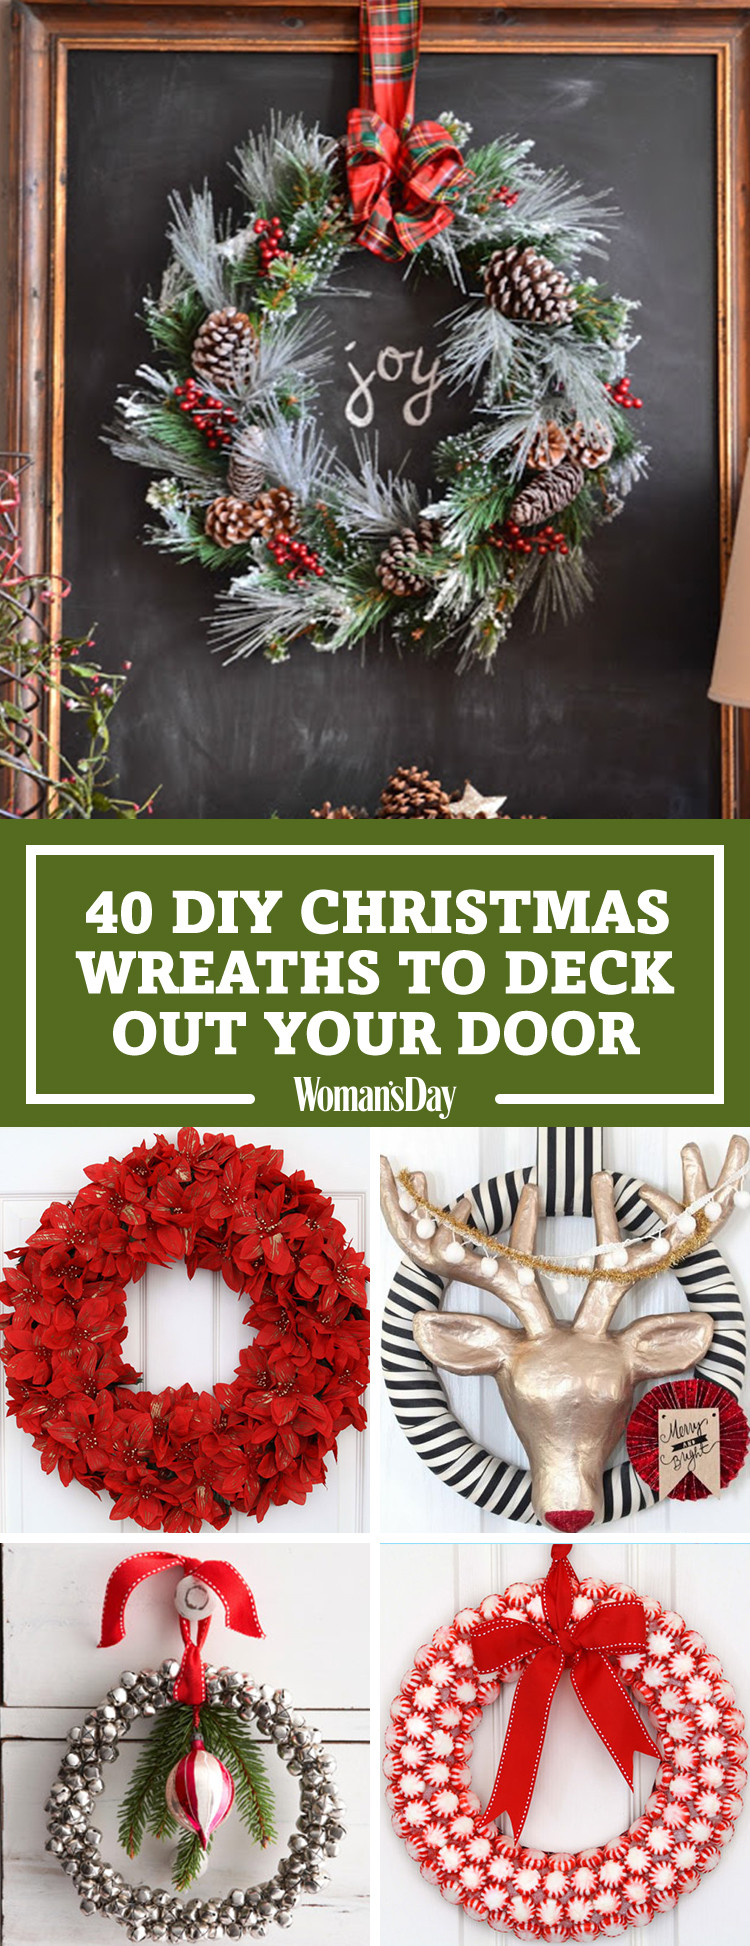 DIY Wreaths Christmas
 40 DIY Christmas Wreath Ideas How To Make a Homemade